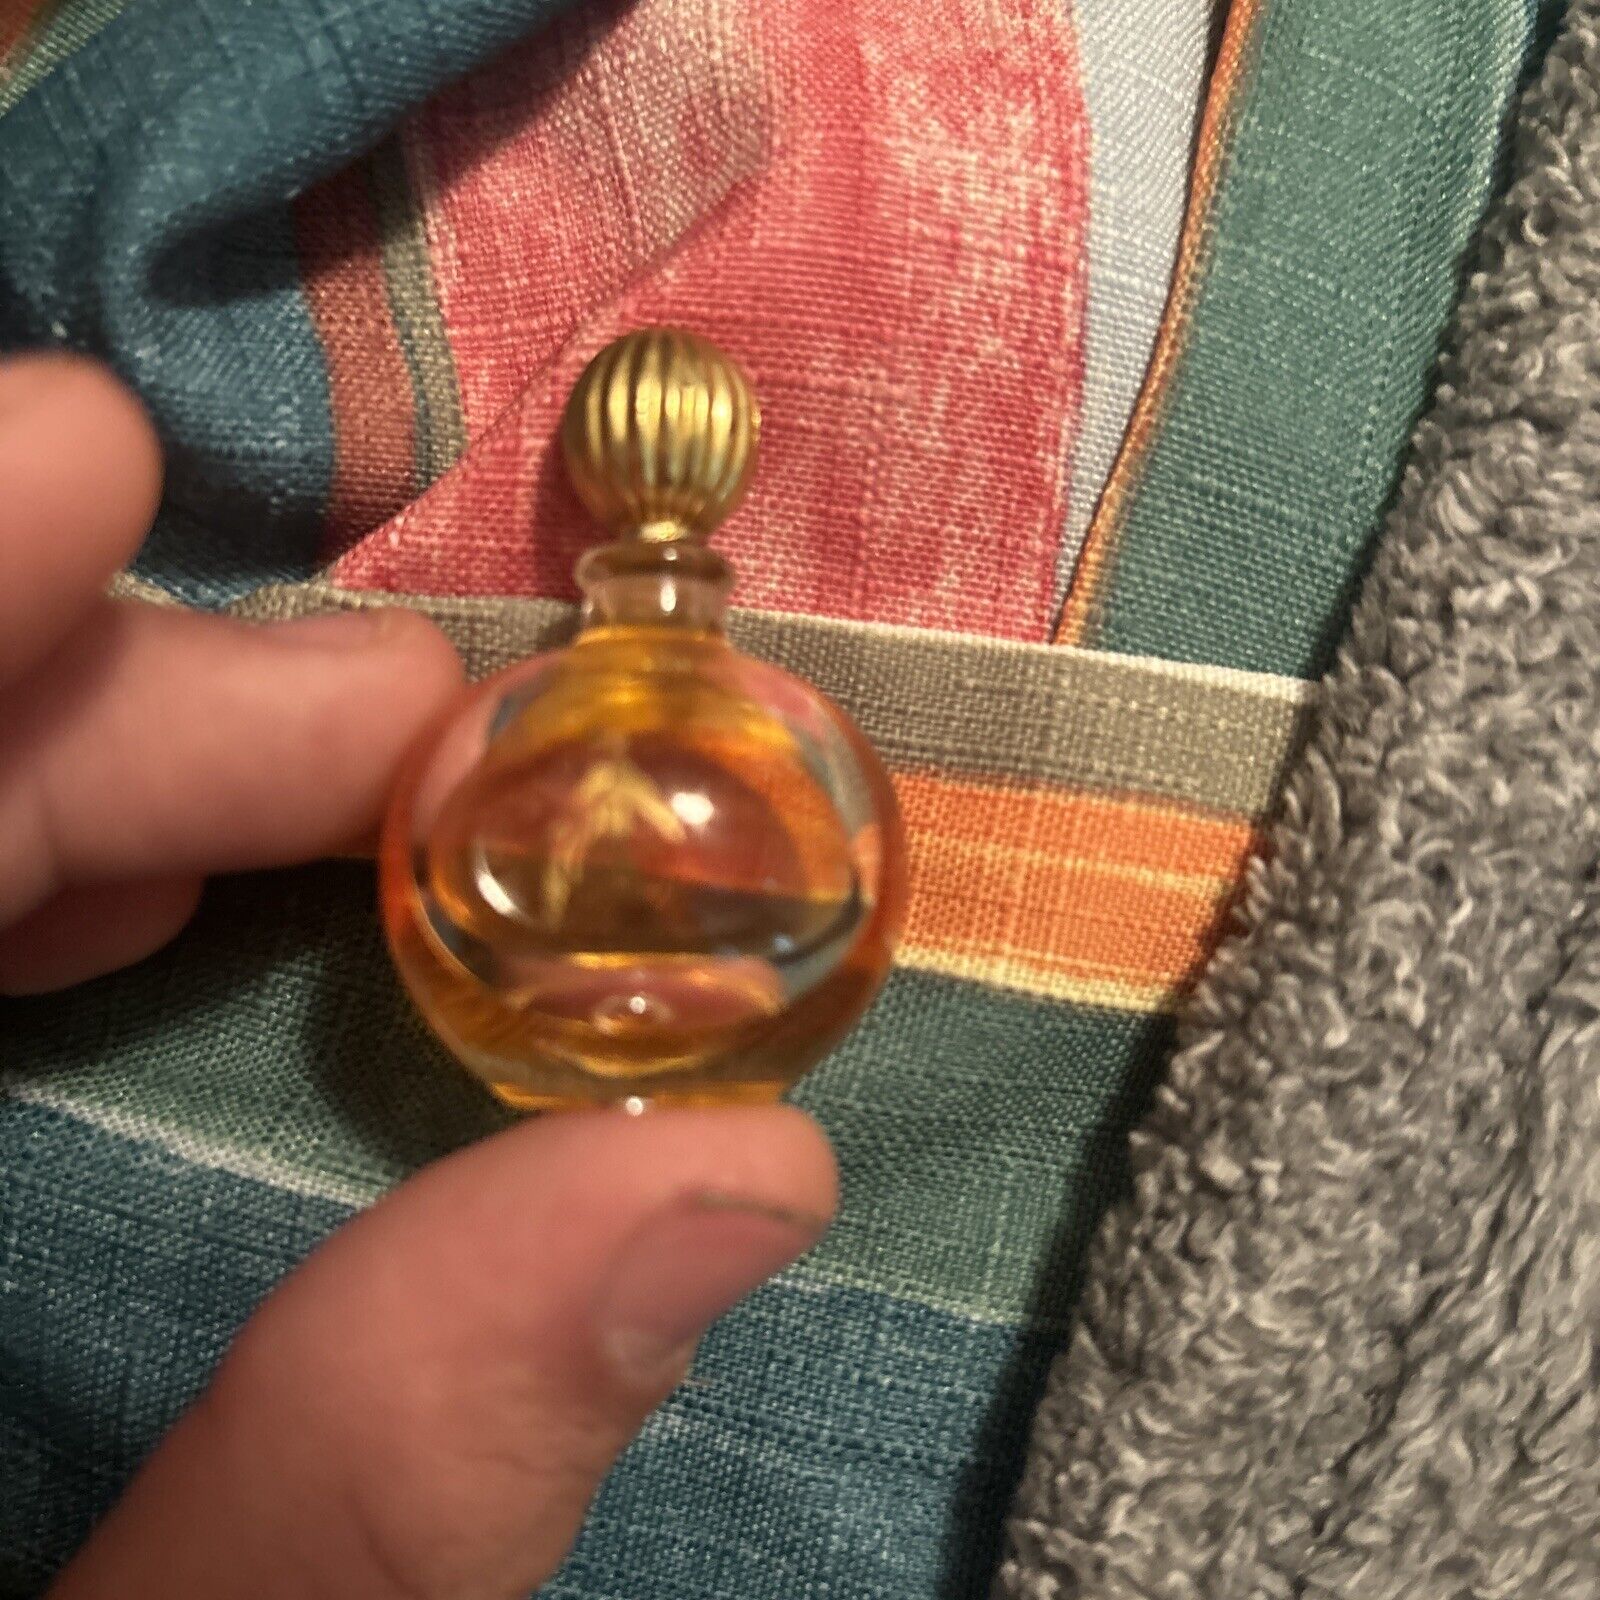 ARPEGE Perfume by Lanvin Eau de Parfum .17oz/5ml Miniature Travel Vintage